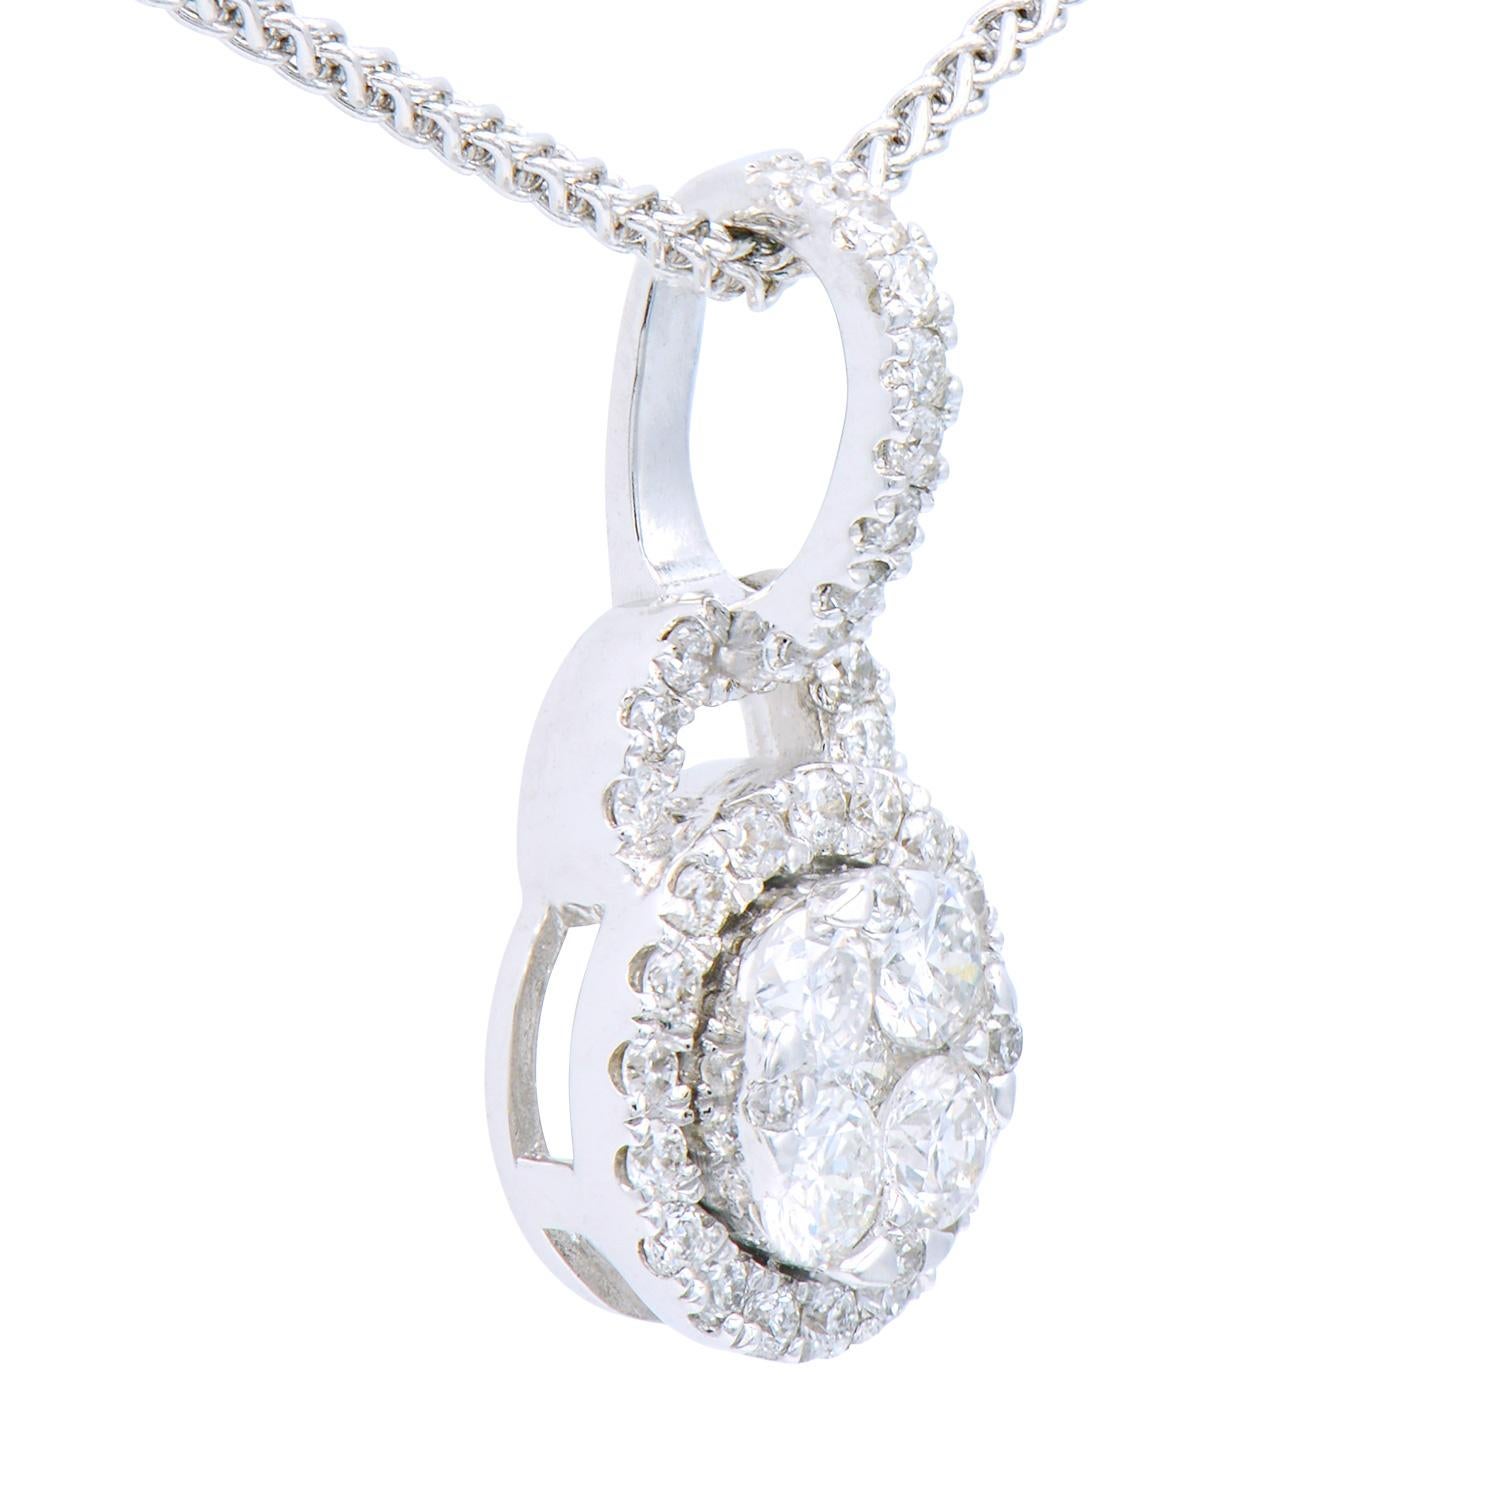 Ce magnifique pendentif circulaire est composé de 42 diamants ronds VS2, de couleur G, totalisant 0,34 carats de diamants ronds brillants. Elles sont serties dans 1,32 gramme d'or blanc 18 carats. Ce look classique est intemporel et constitue le